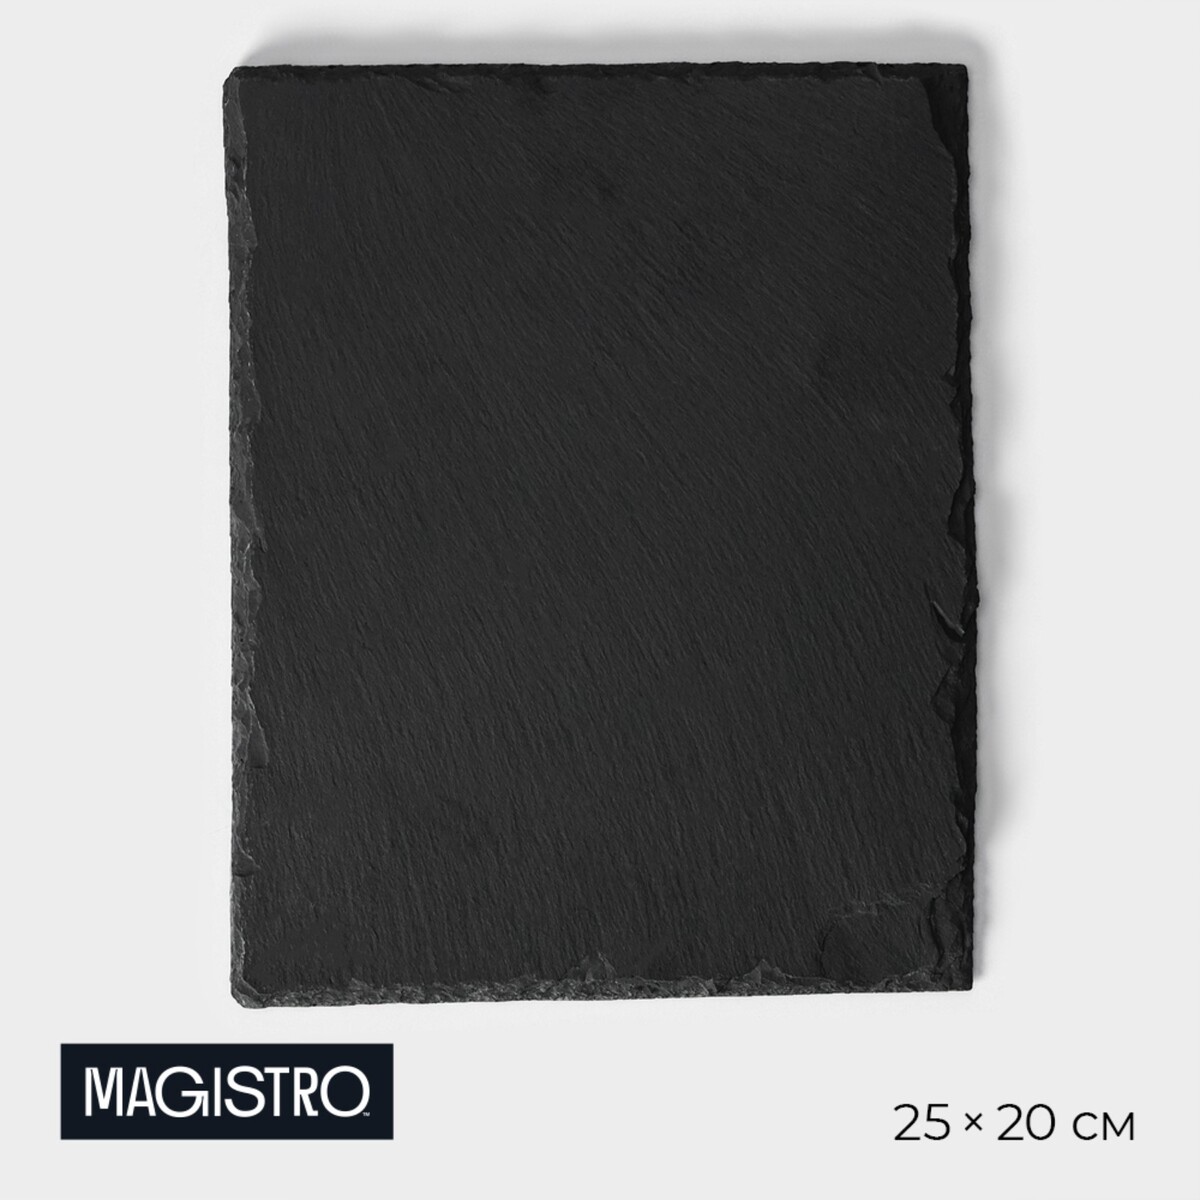 Доска для подачи из сланца magistro valley, 25×20 см доска для подачи magistro valley из сланца 21×20 см в виде сердца